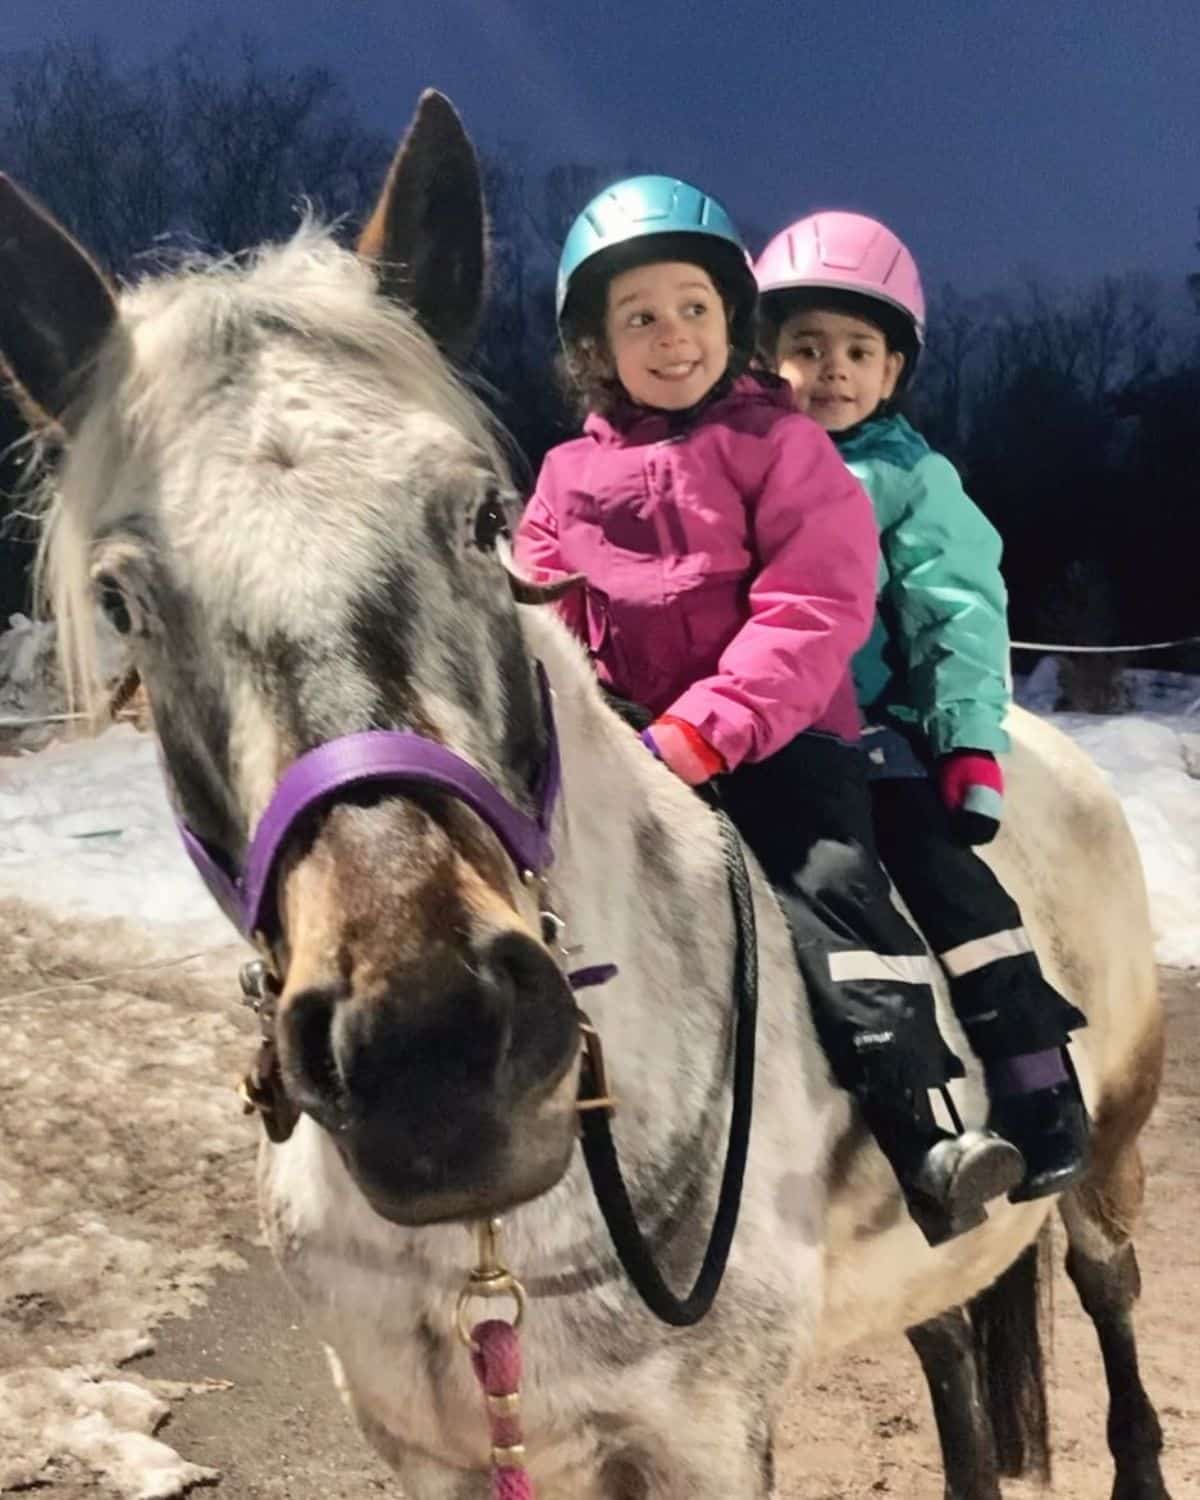 Two kids riding a gray Colorado Ranger horse.